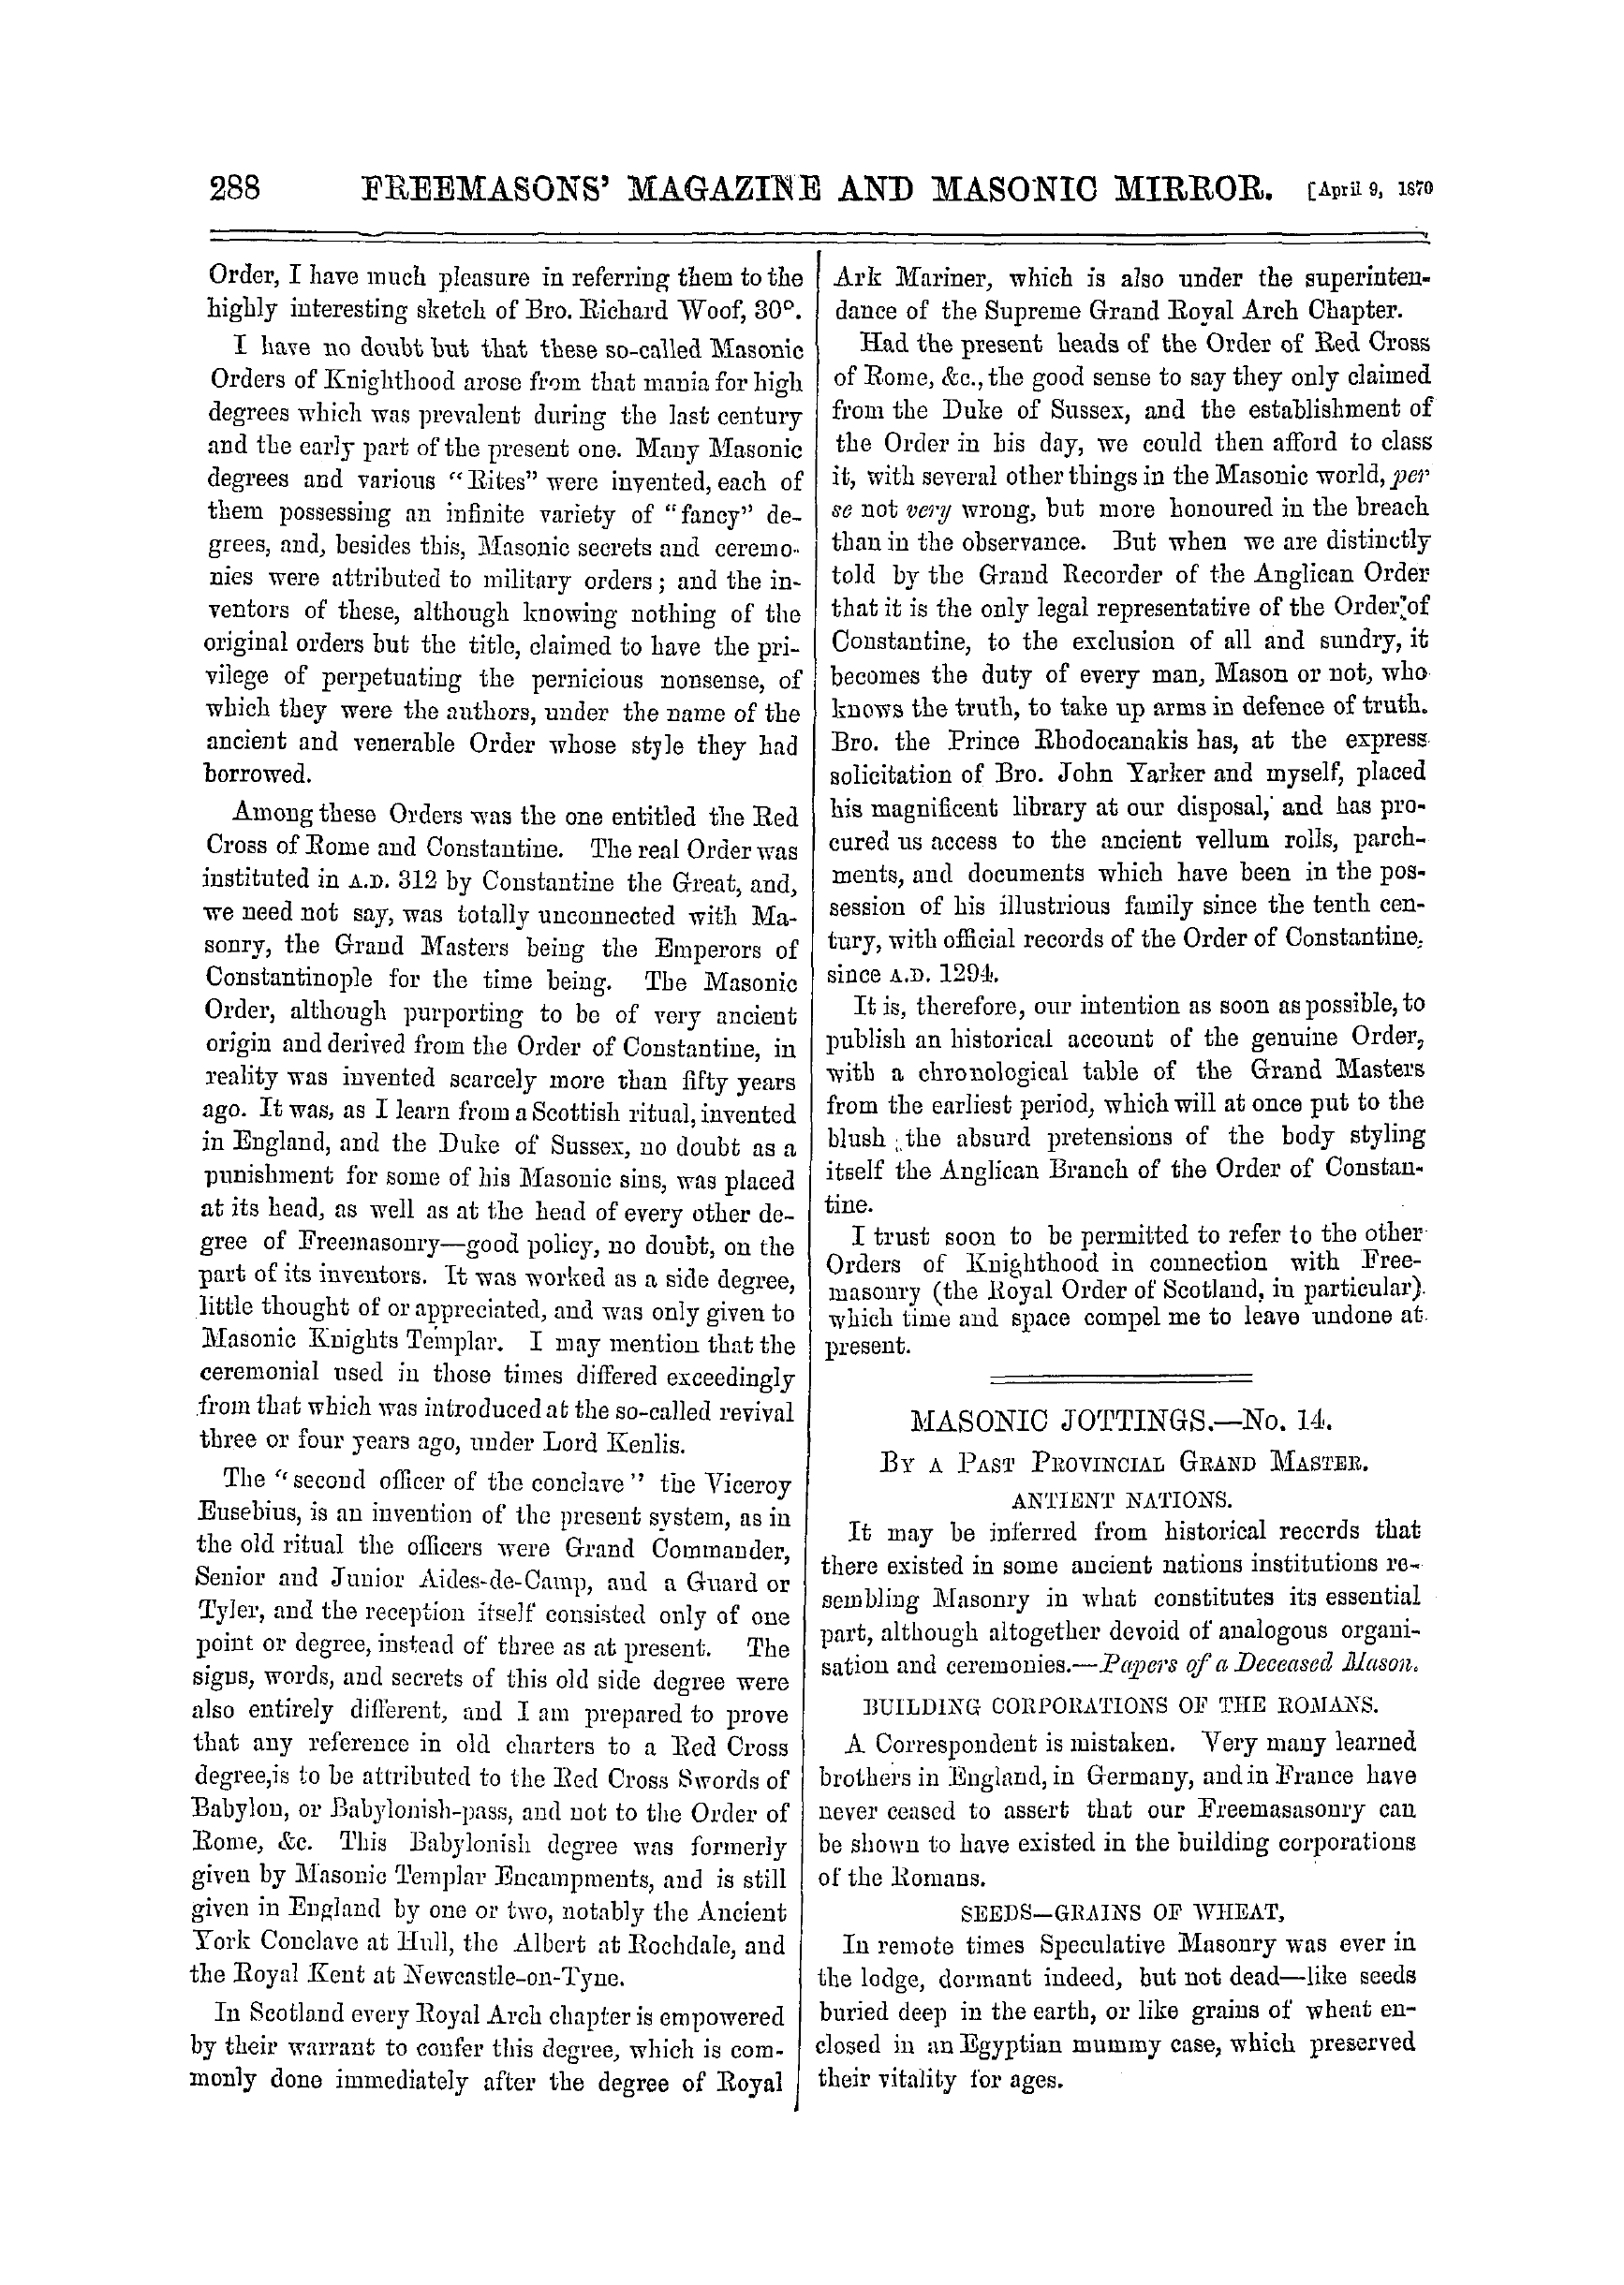 The Freemasons' Monthly Magazine: 1870-04-09: 8